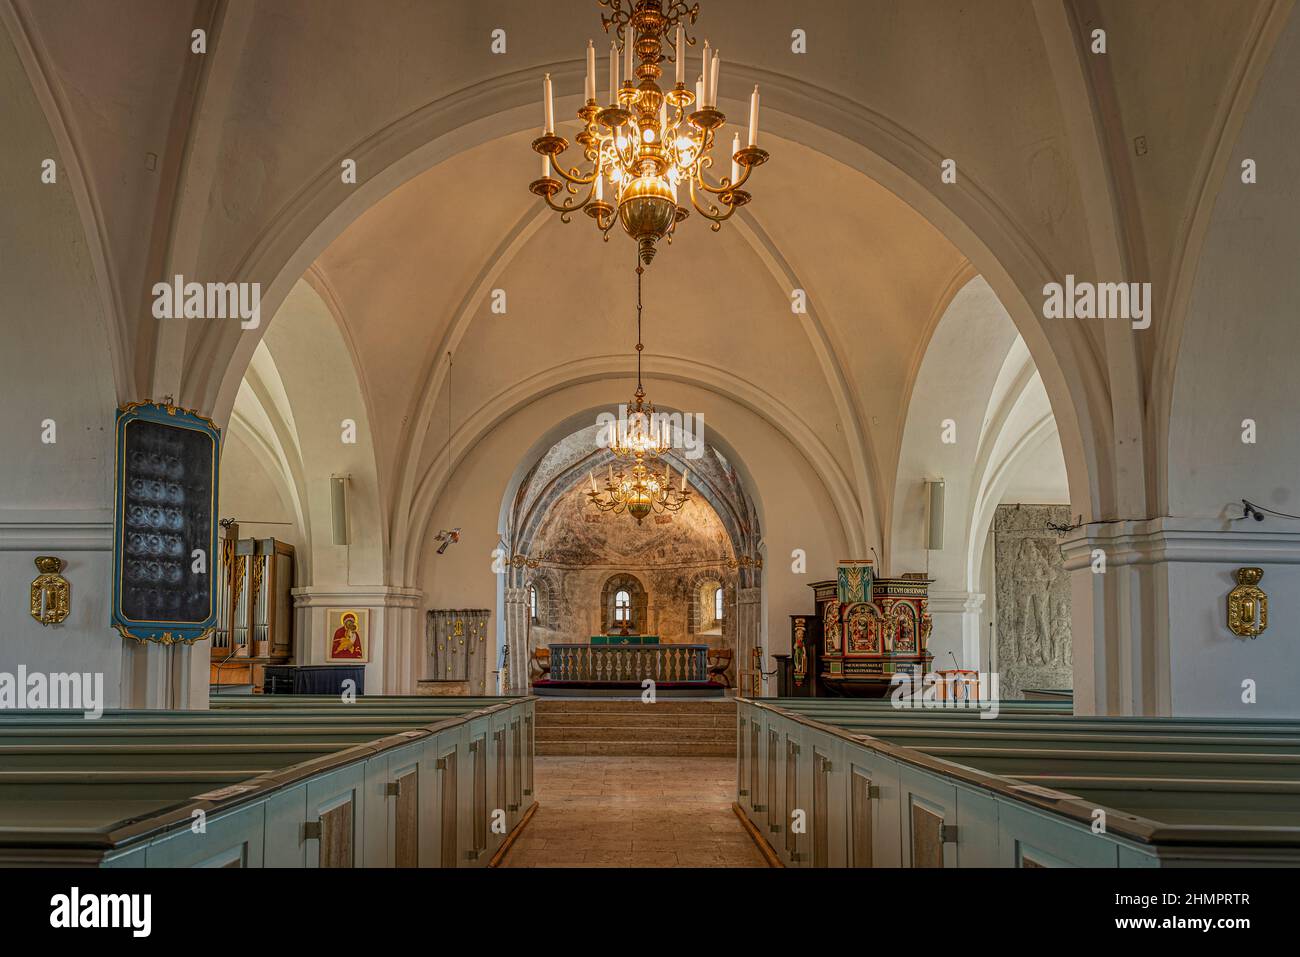 Intérieur d'une église luthérienne aux arches blanches, illuminée par un grand lustre, Skurup, Suède, 16 juillet 2021 Banque D'Images